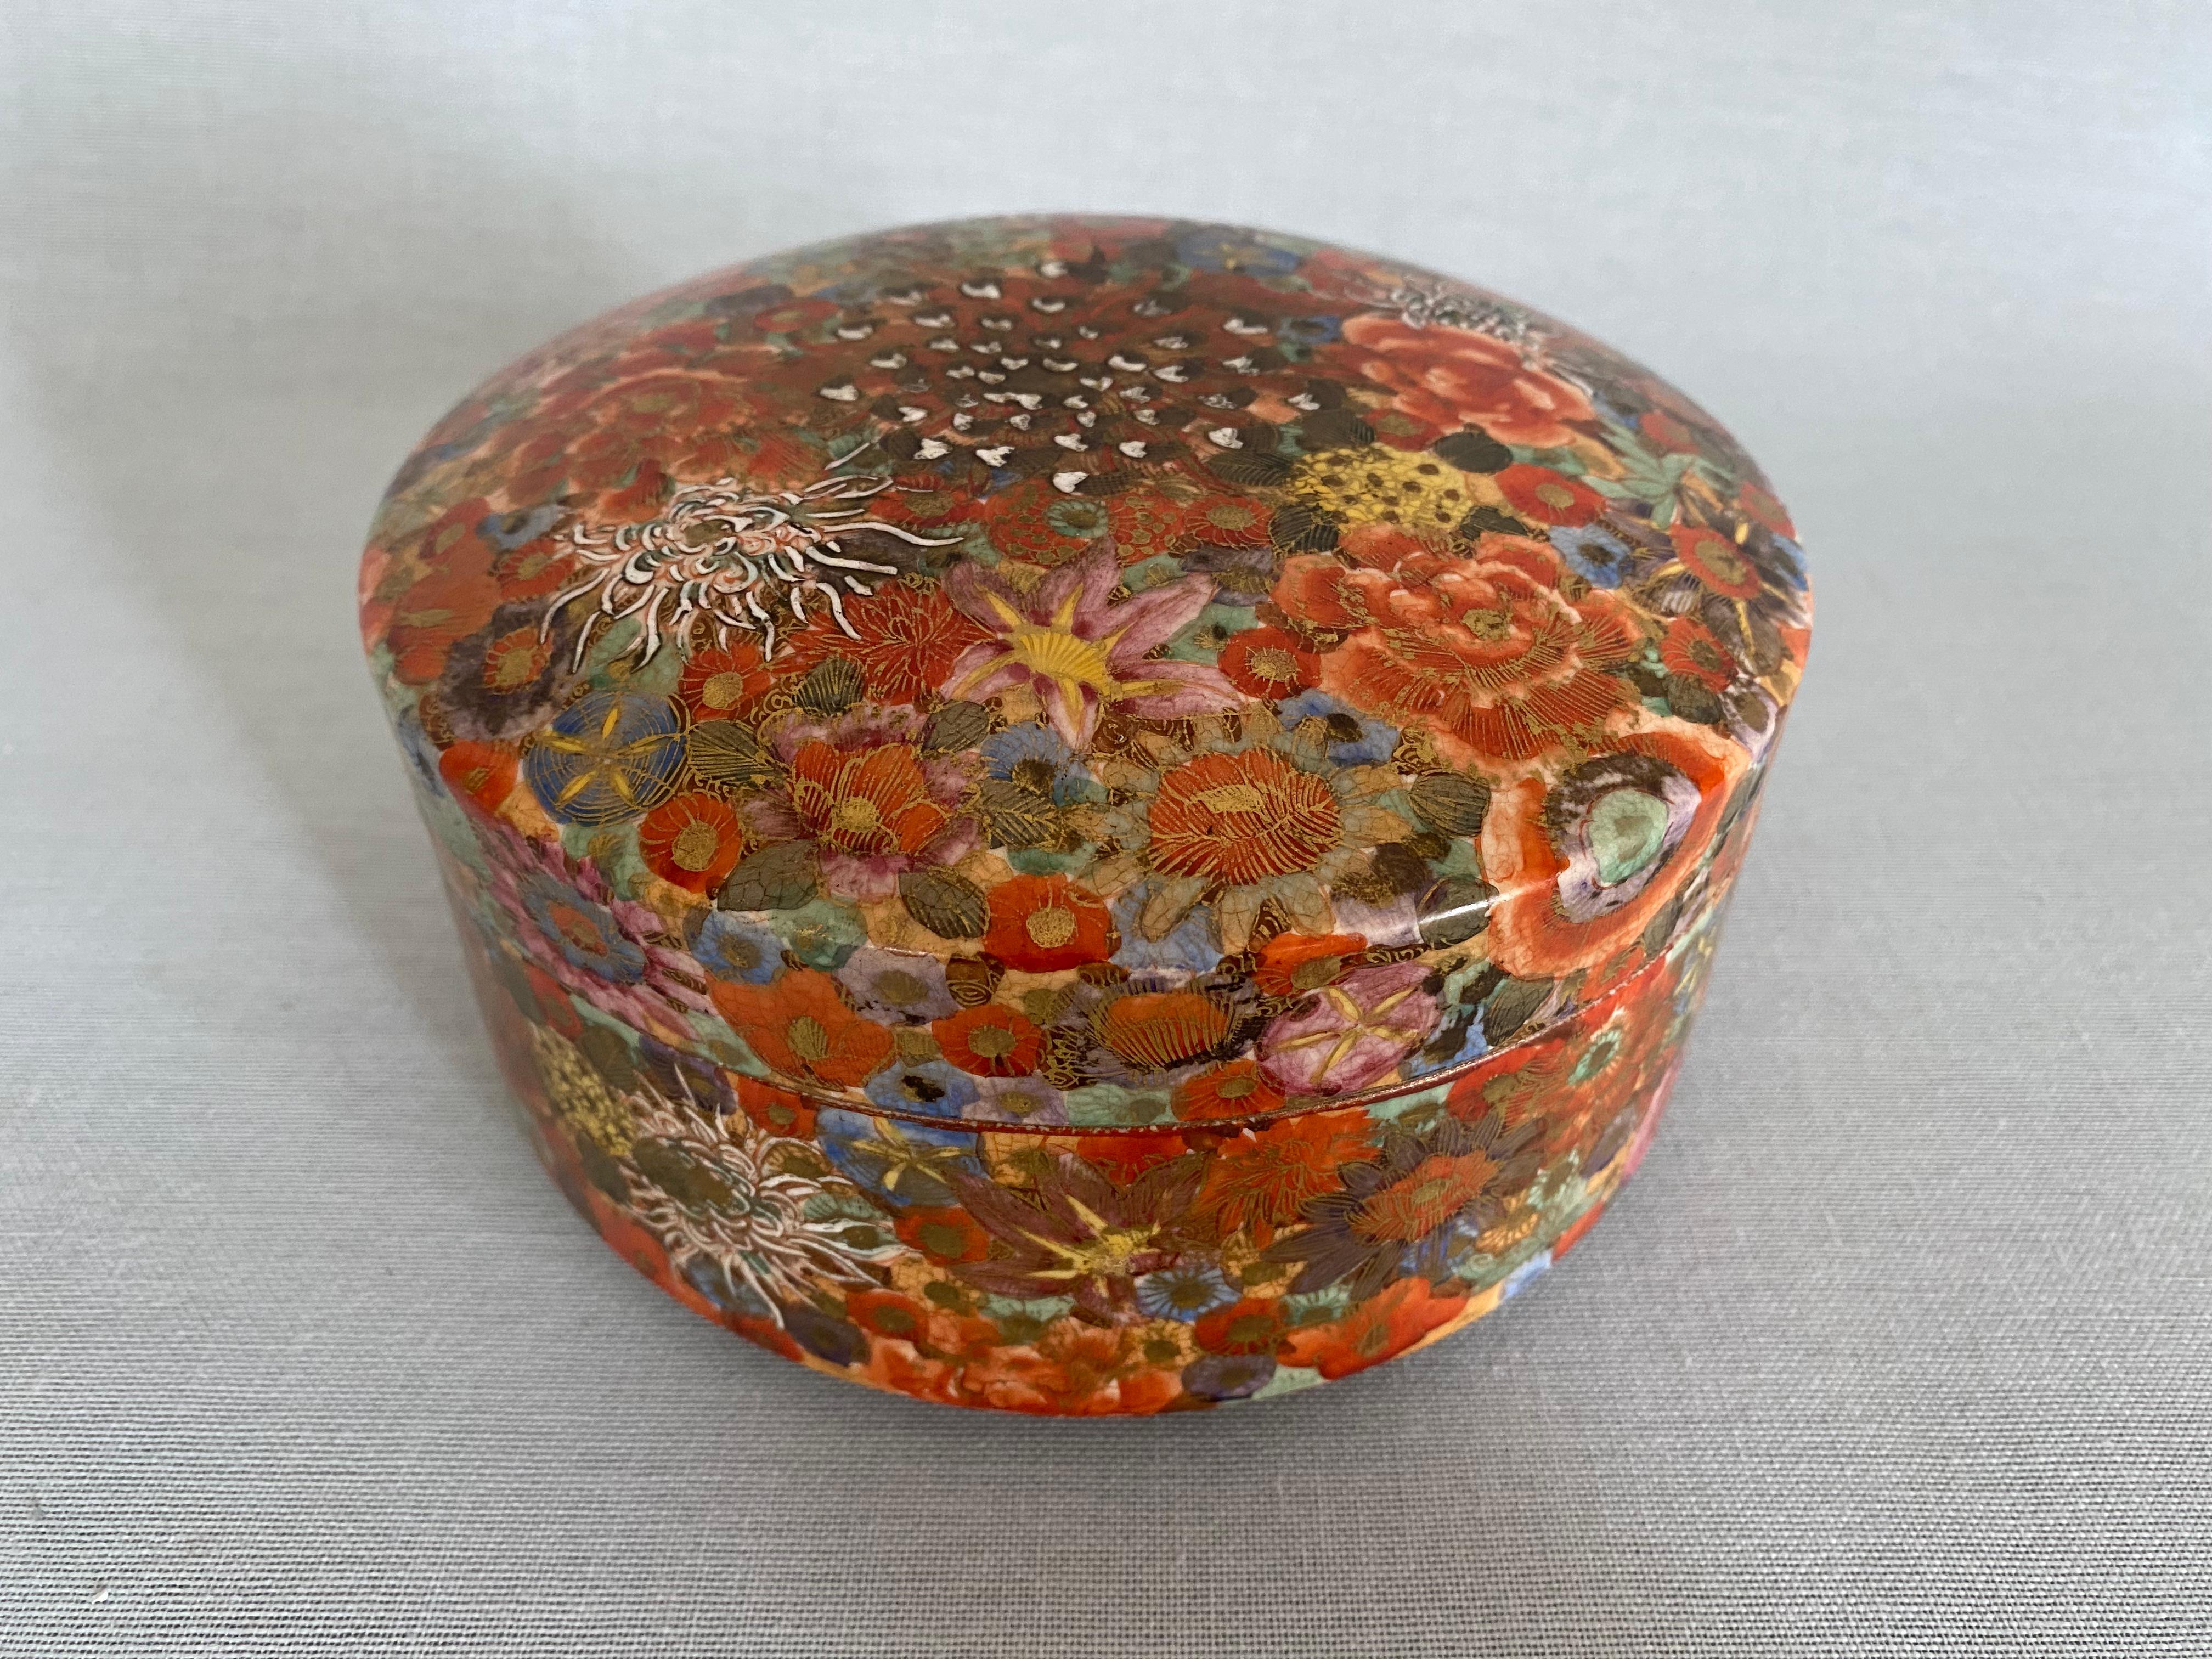 Japanische Millefleur Satsuma-Dose mit rundem Deckel aus der Mitte des 19. Jahrhunderts, mit Shimazu-Wappen.
Die Keramikbox hat ein wunderschönes mehrfarbiges Blumendekor mit reichen vergoldeten Akzenten.
Auch das Innere der Schachtel ist mit einer